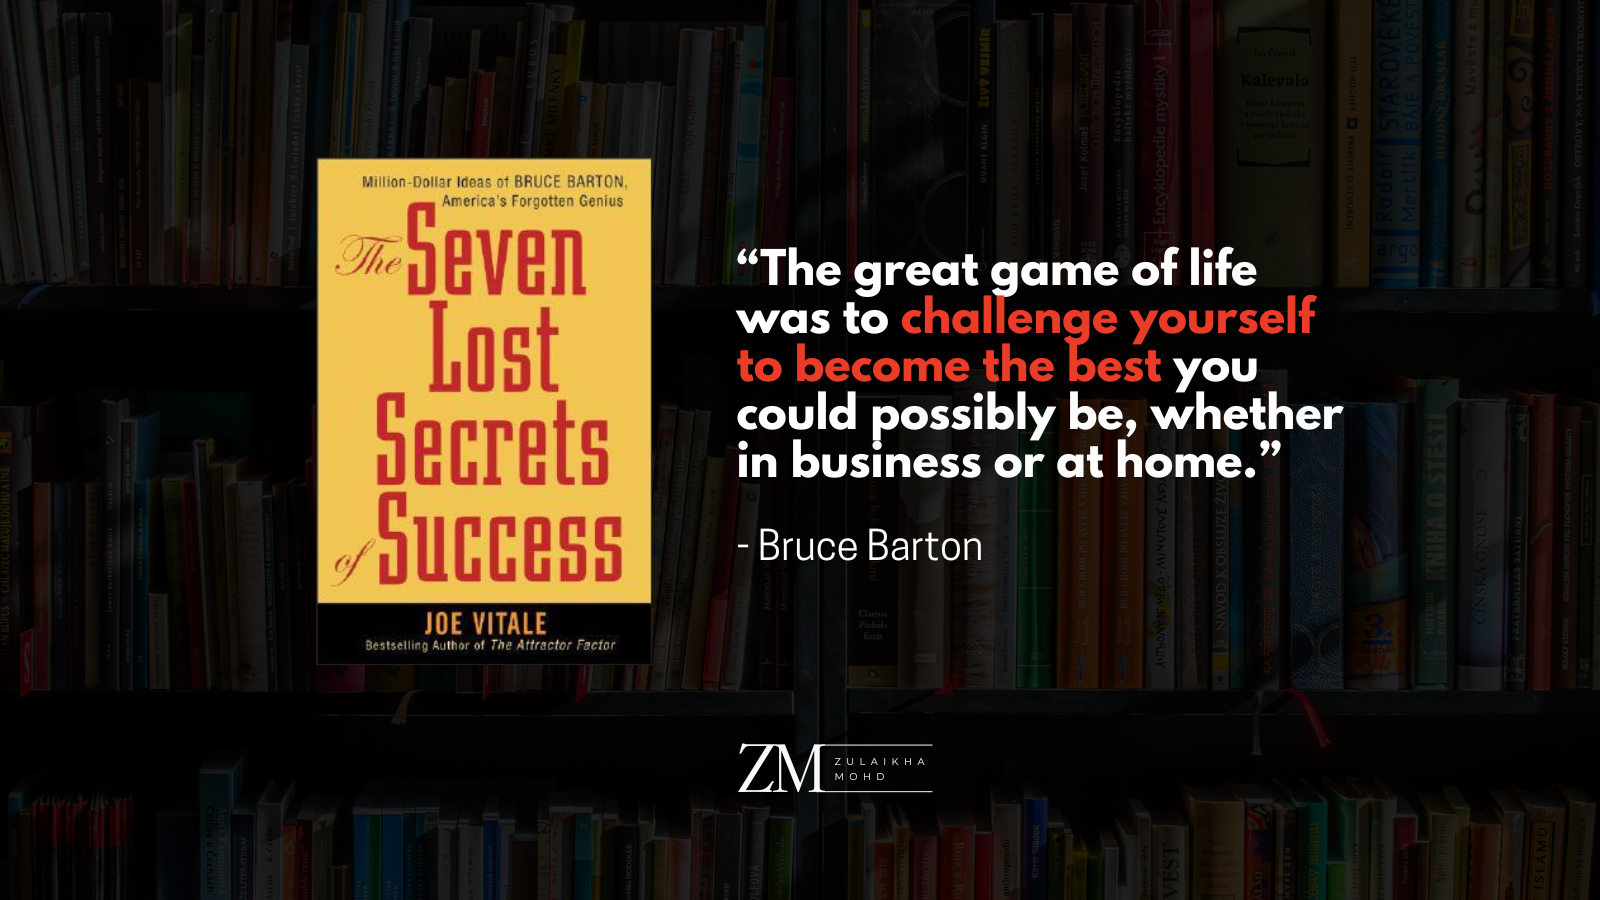 The Seven Lost Secrets of Success by Joe Vitale